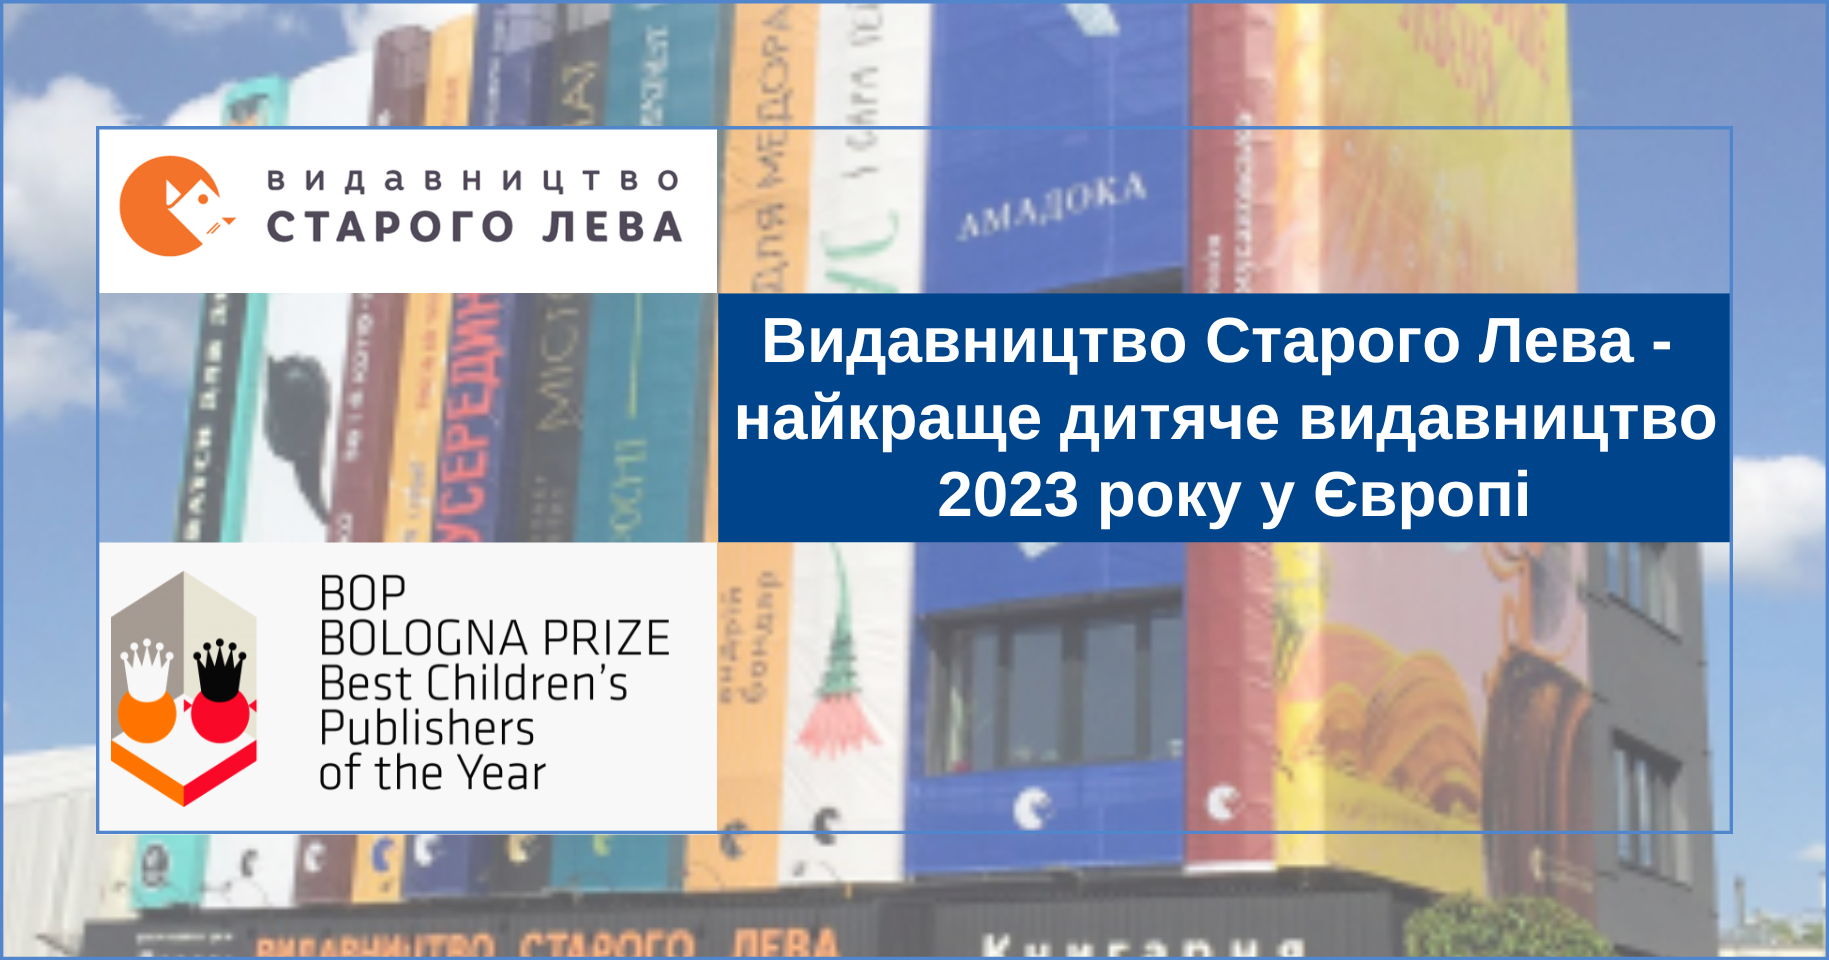 Видавництво Старого Лева — найкраще дитяче видавництво 2023 року у Європі